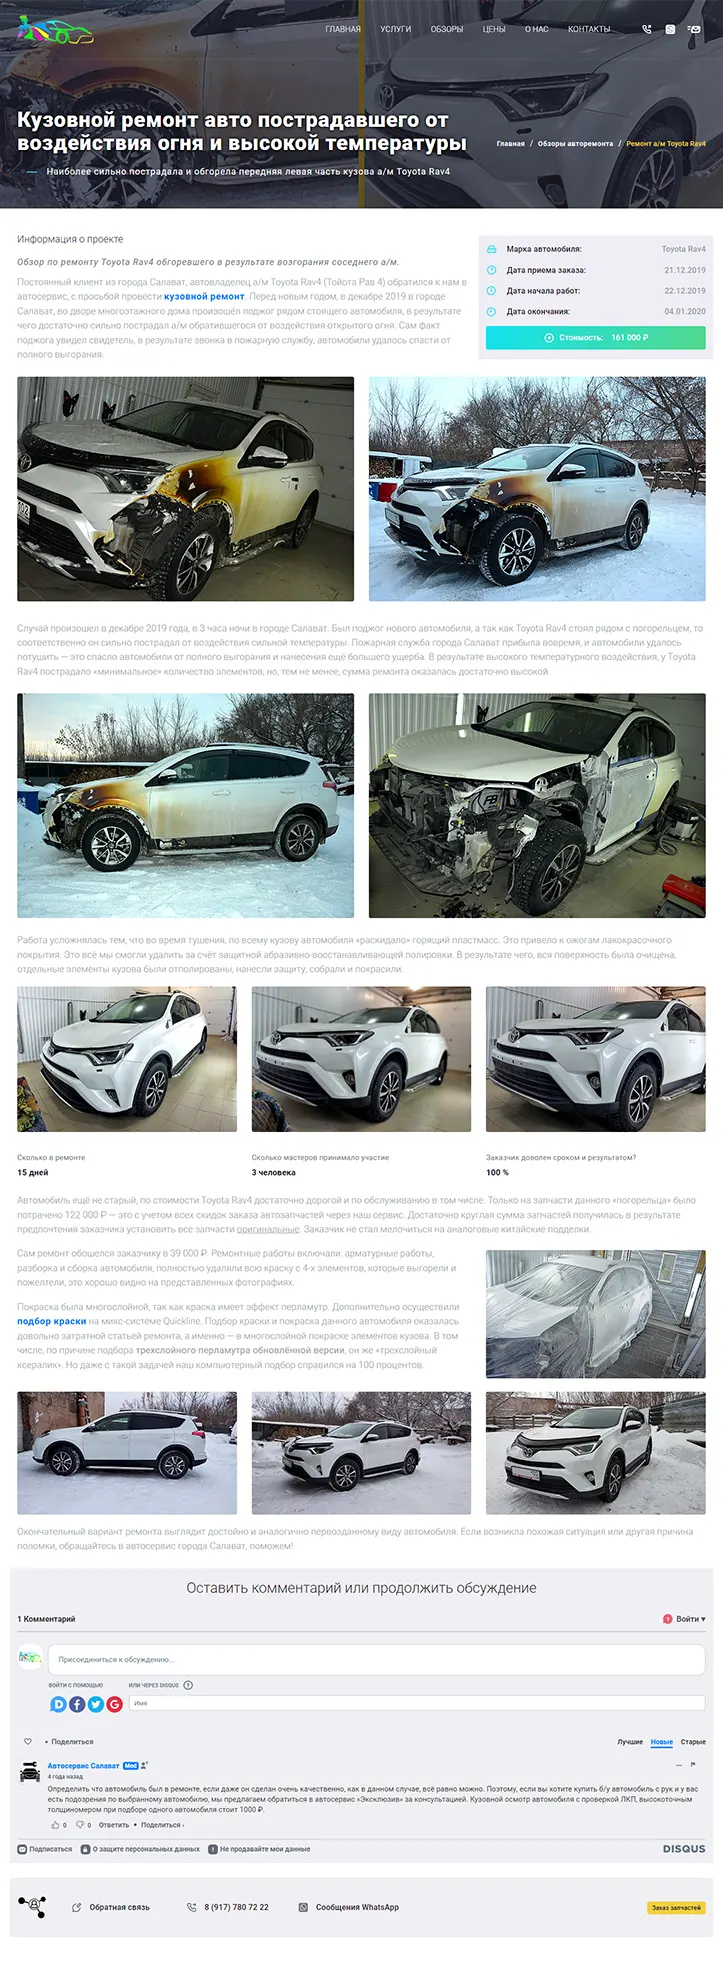 Пример страницы по обзору ремонта автомобиля